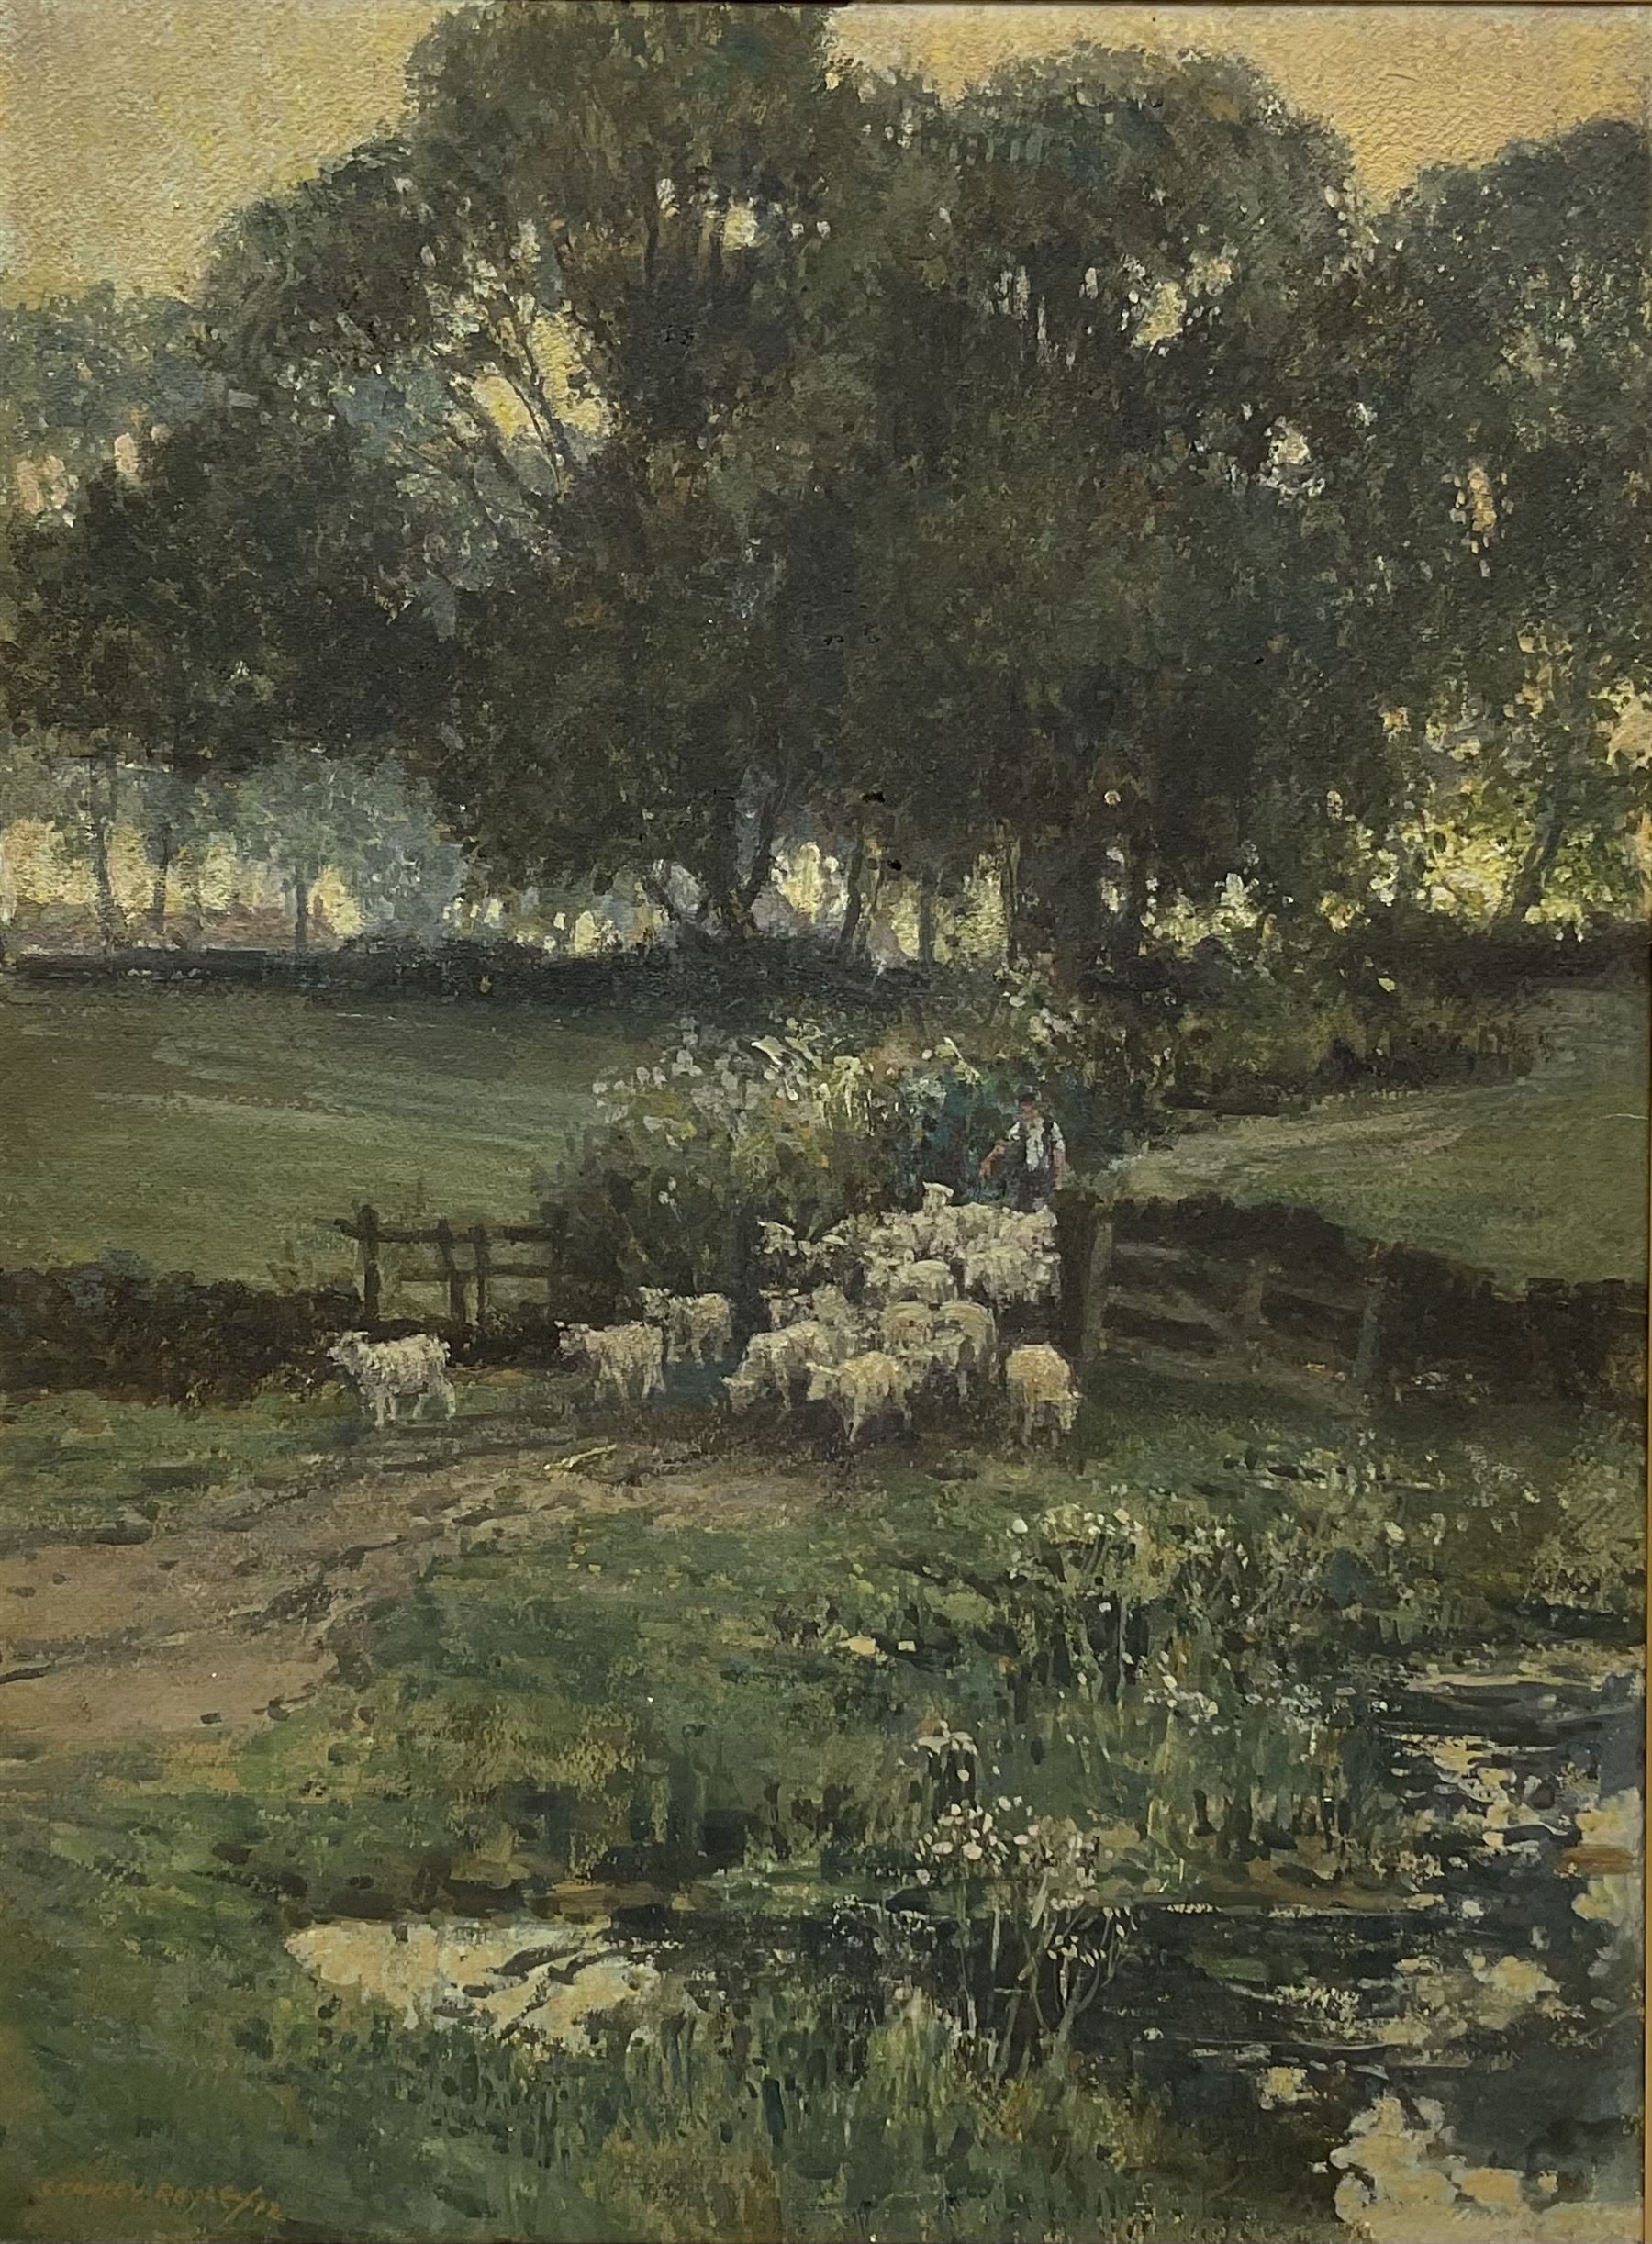 Stanley Royle (British 1888-1961): Herding Sheep through a Gateway